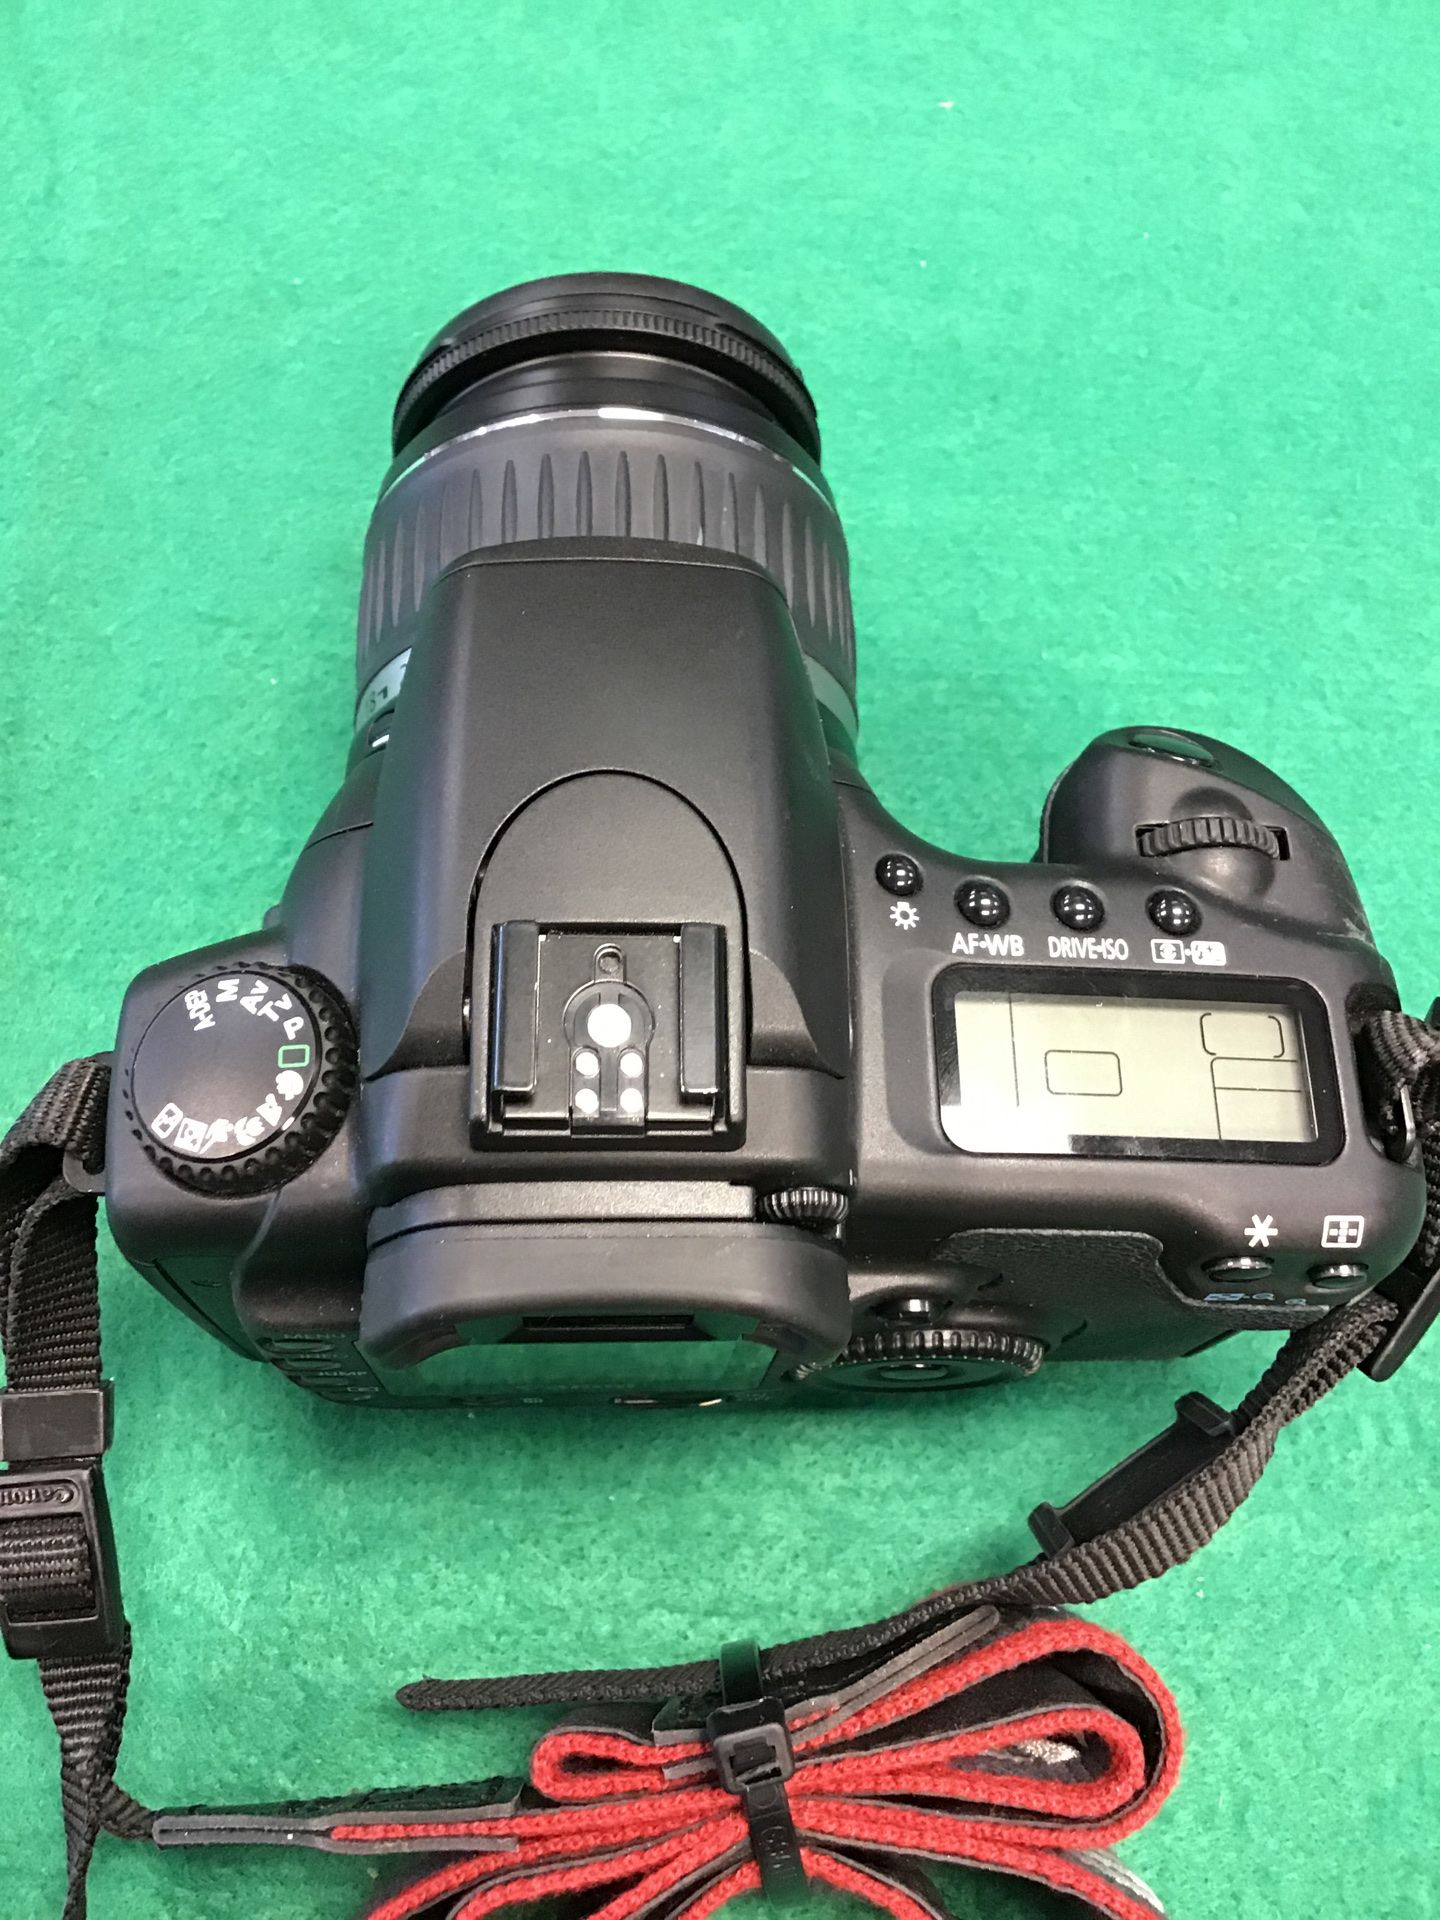 Canon Eos 20D DSLR camera